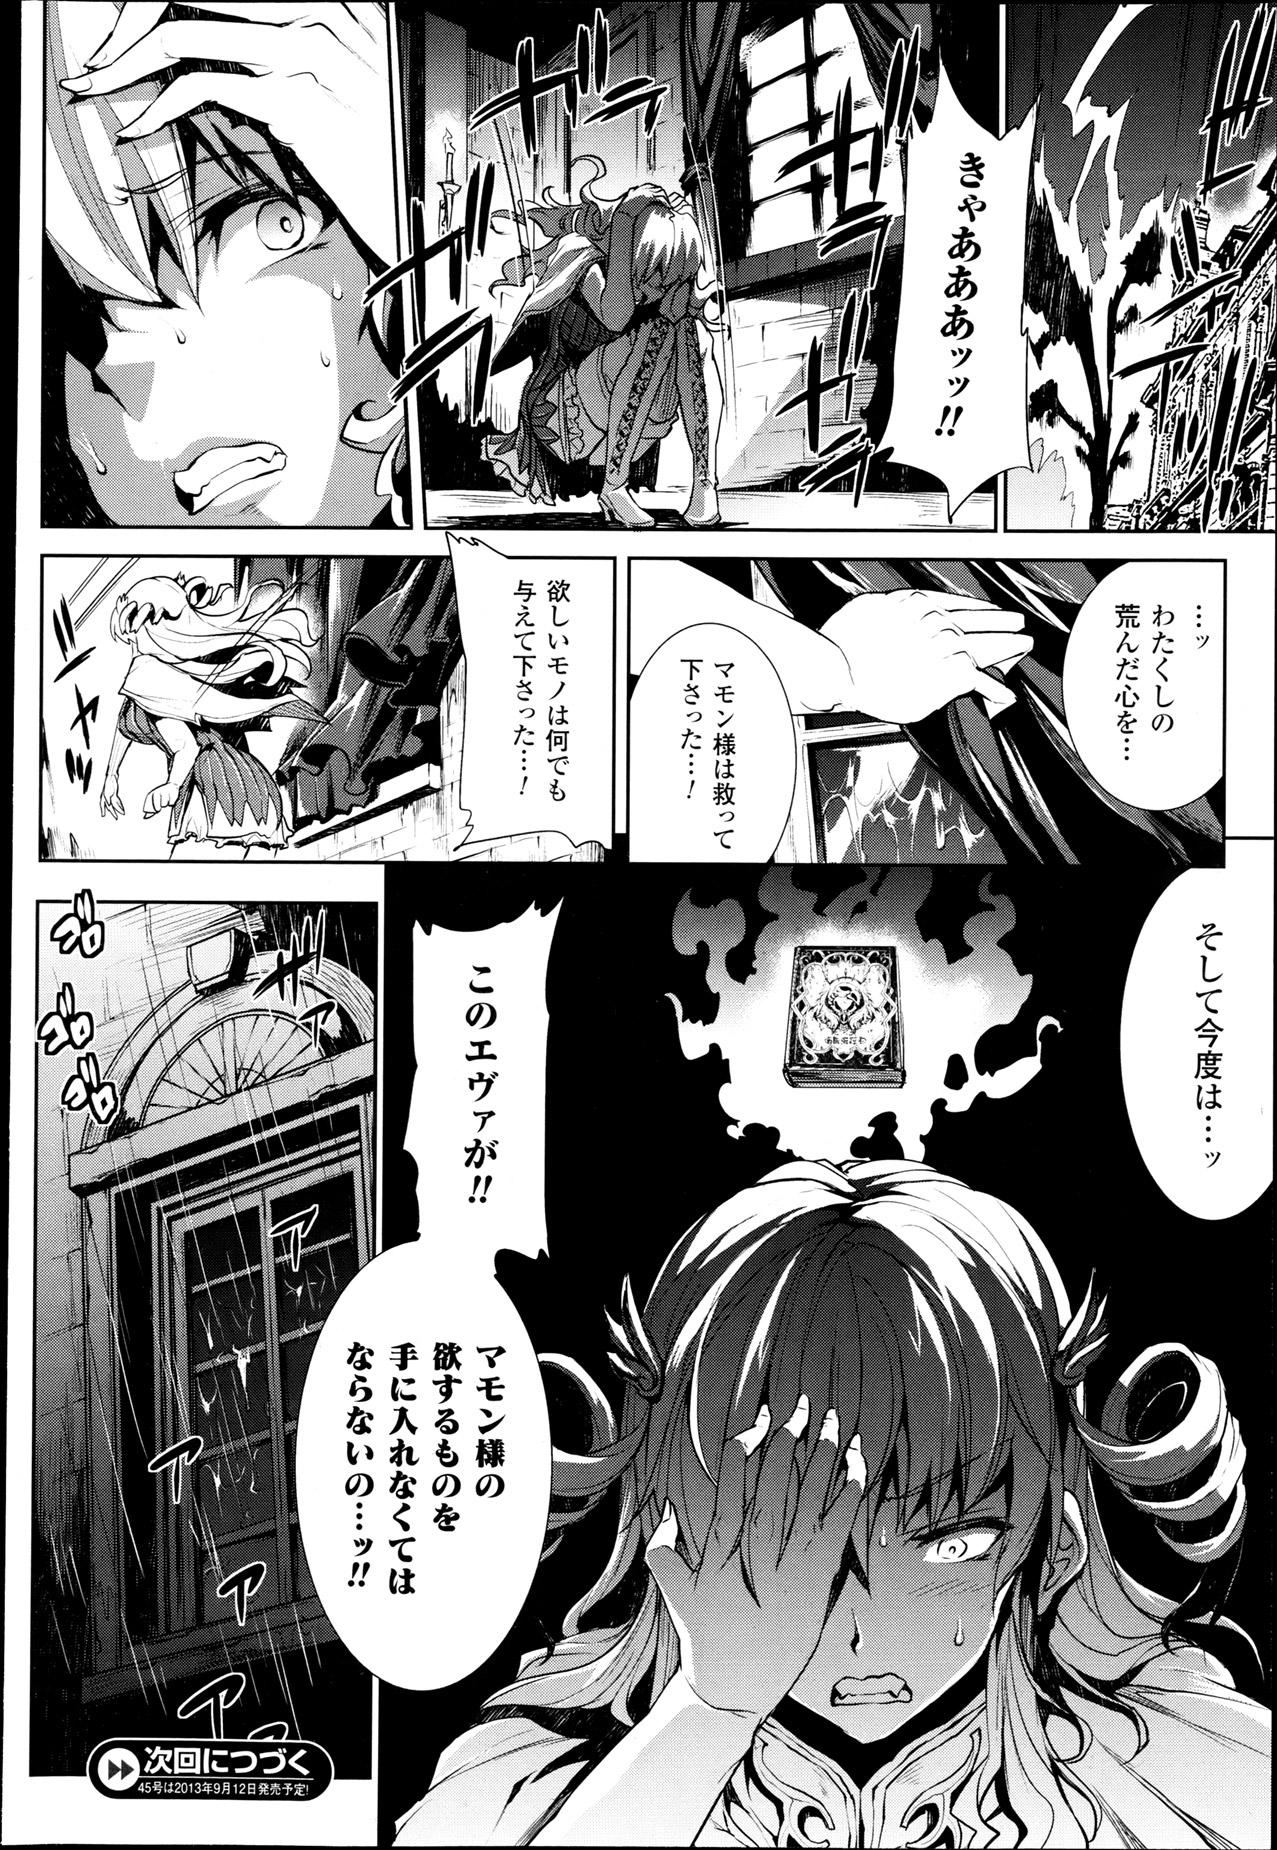 [Erect Sawaru] Shinkyoku no Grimoire -PANDRA saga 2nd story- Ch. 7-12 25